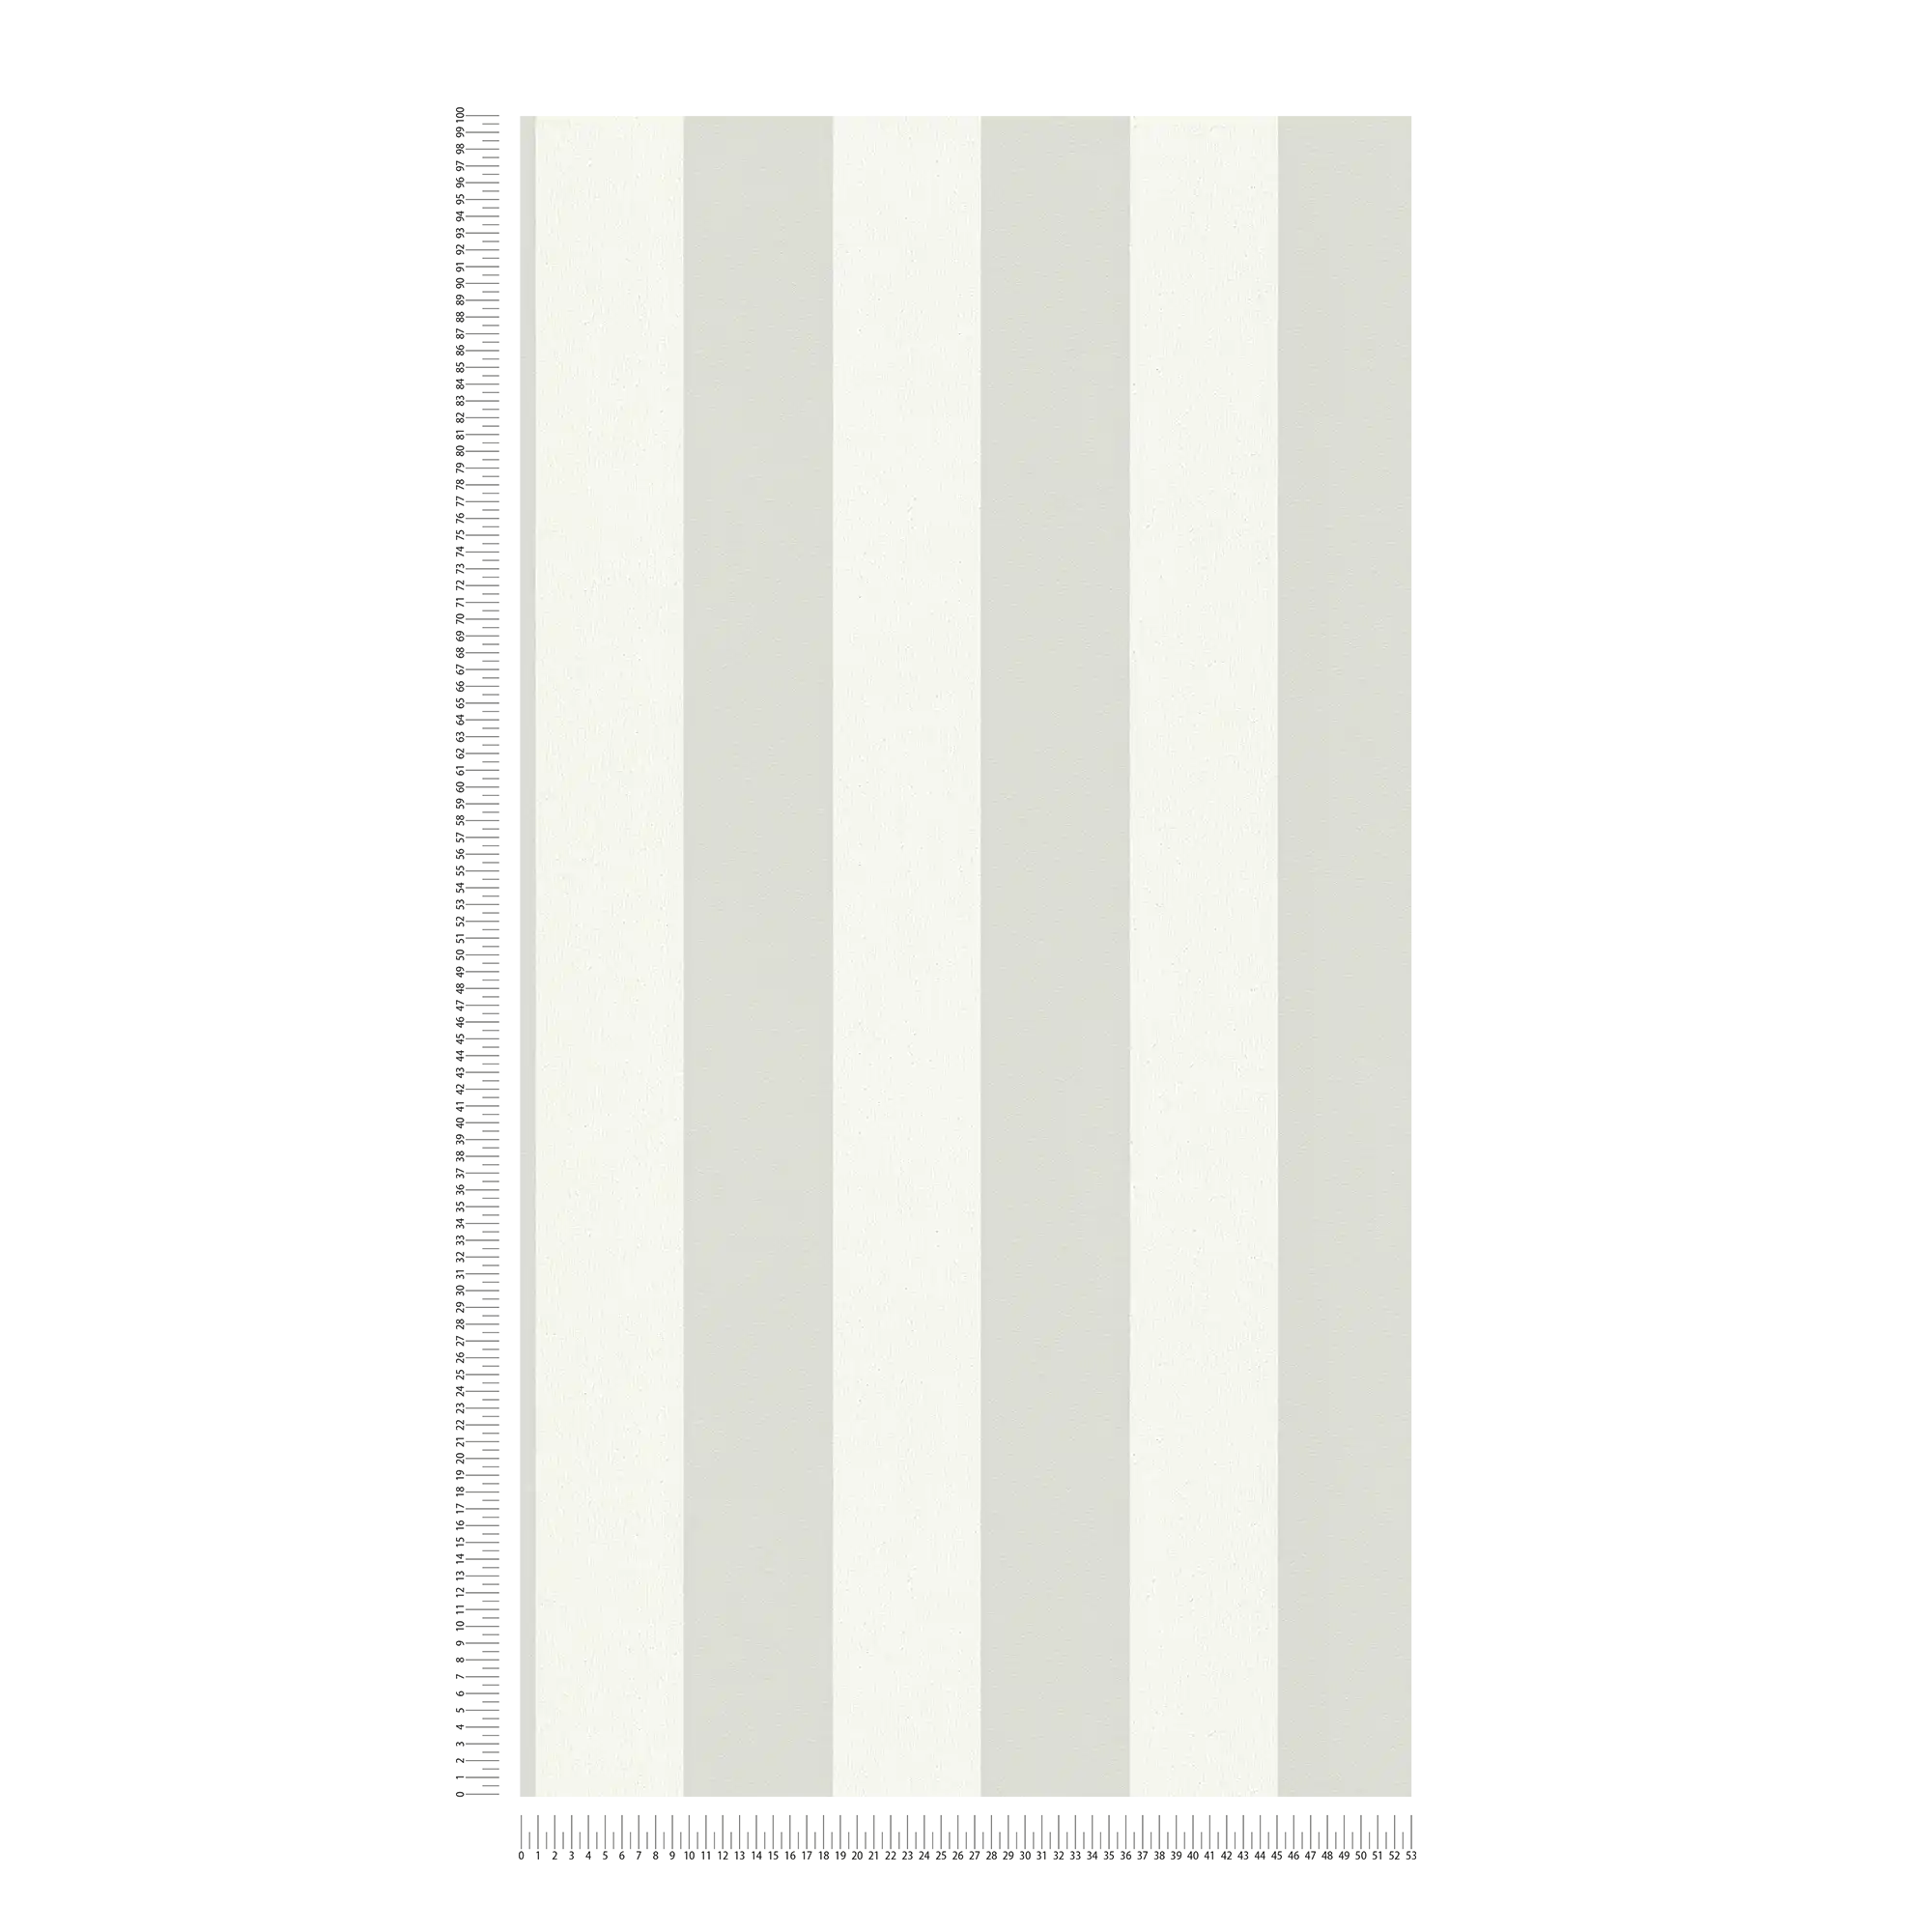             Carta da parati a righe con motivo strutturato, righe a blocchi grigio e bianco
        